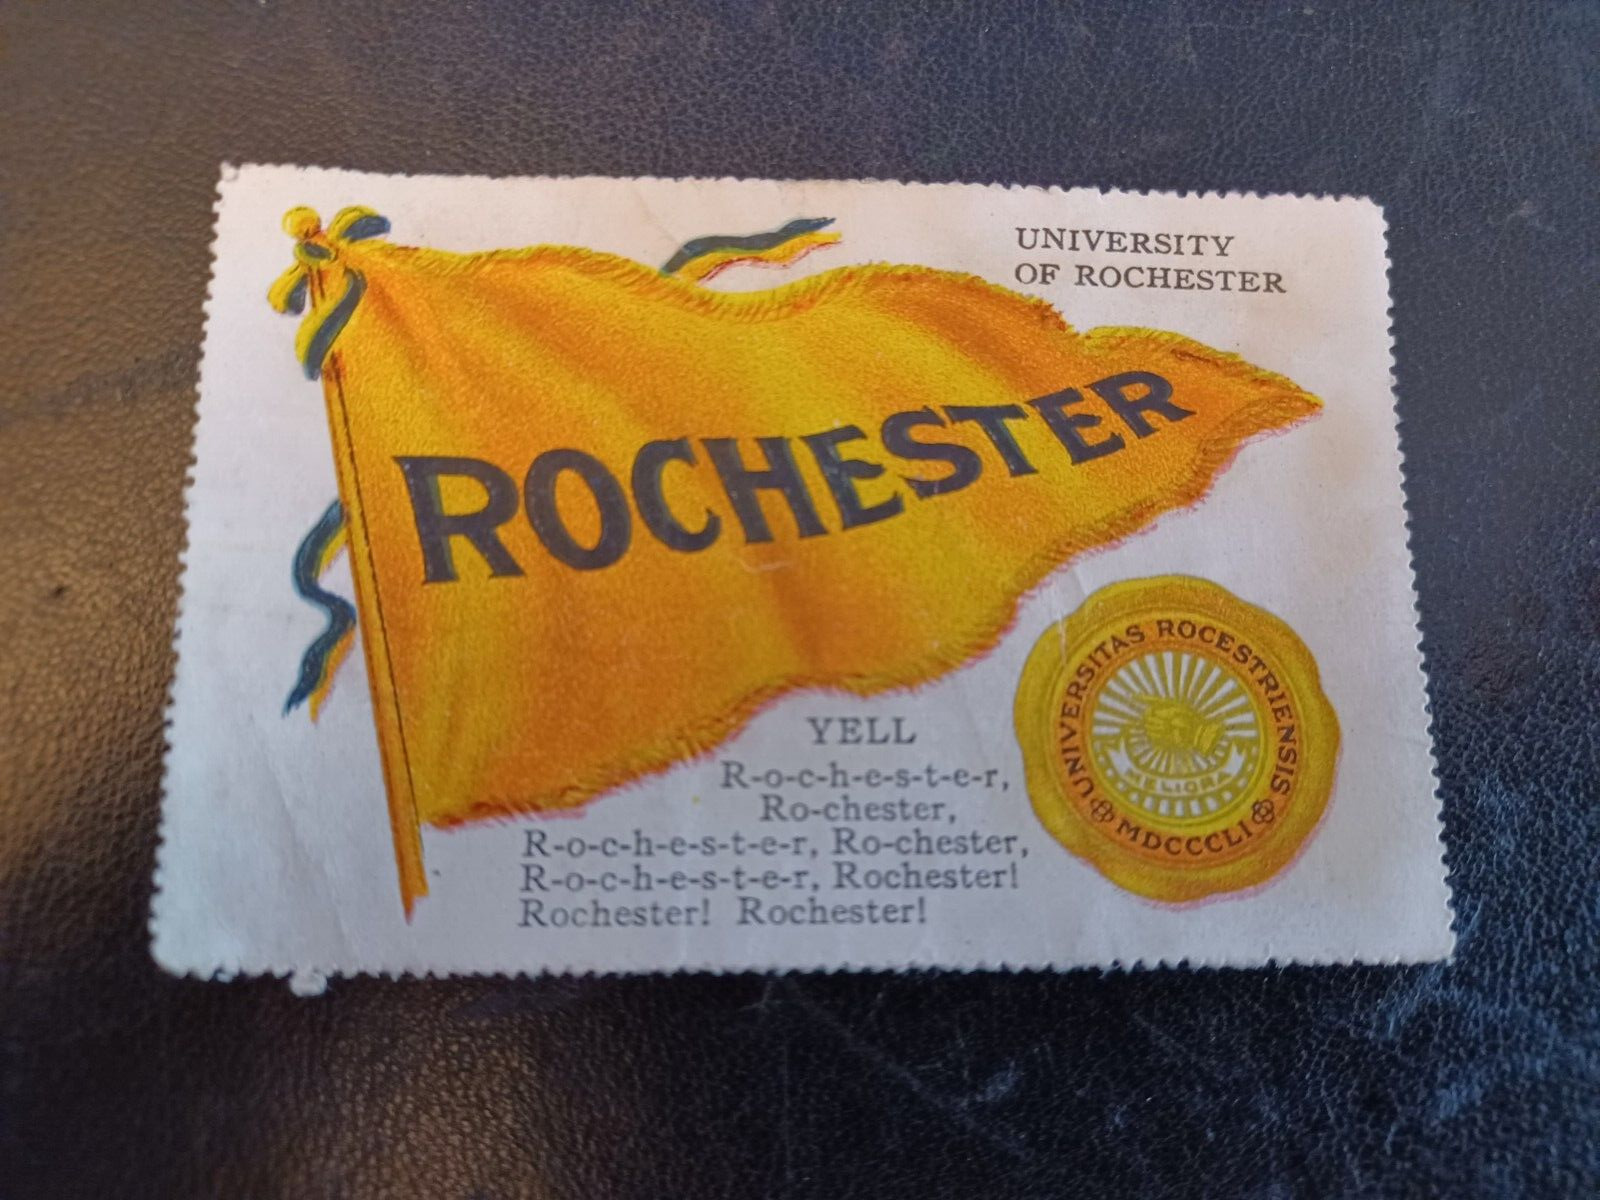 c1910s T331 Fatima Cigarettes stamp ROCHESTER UNIVERSITY Tough issue